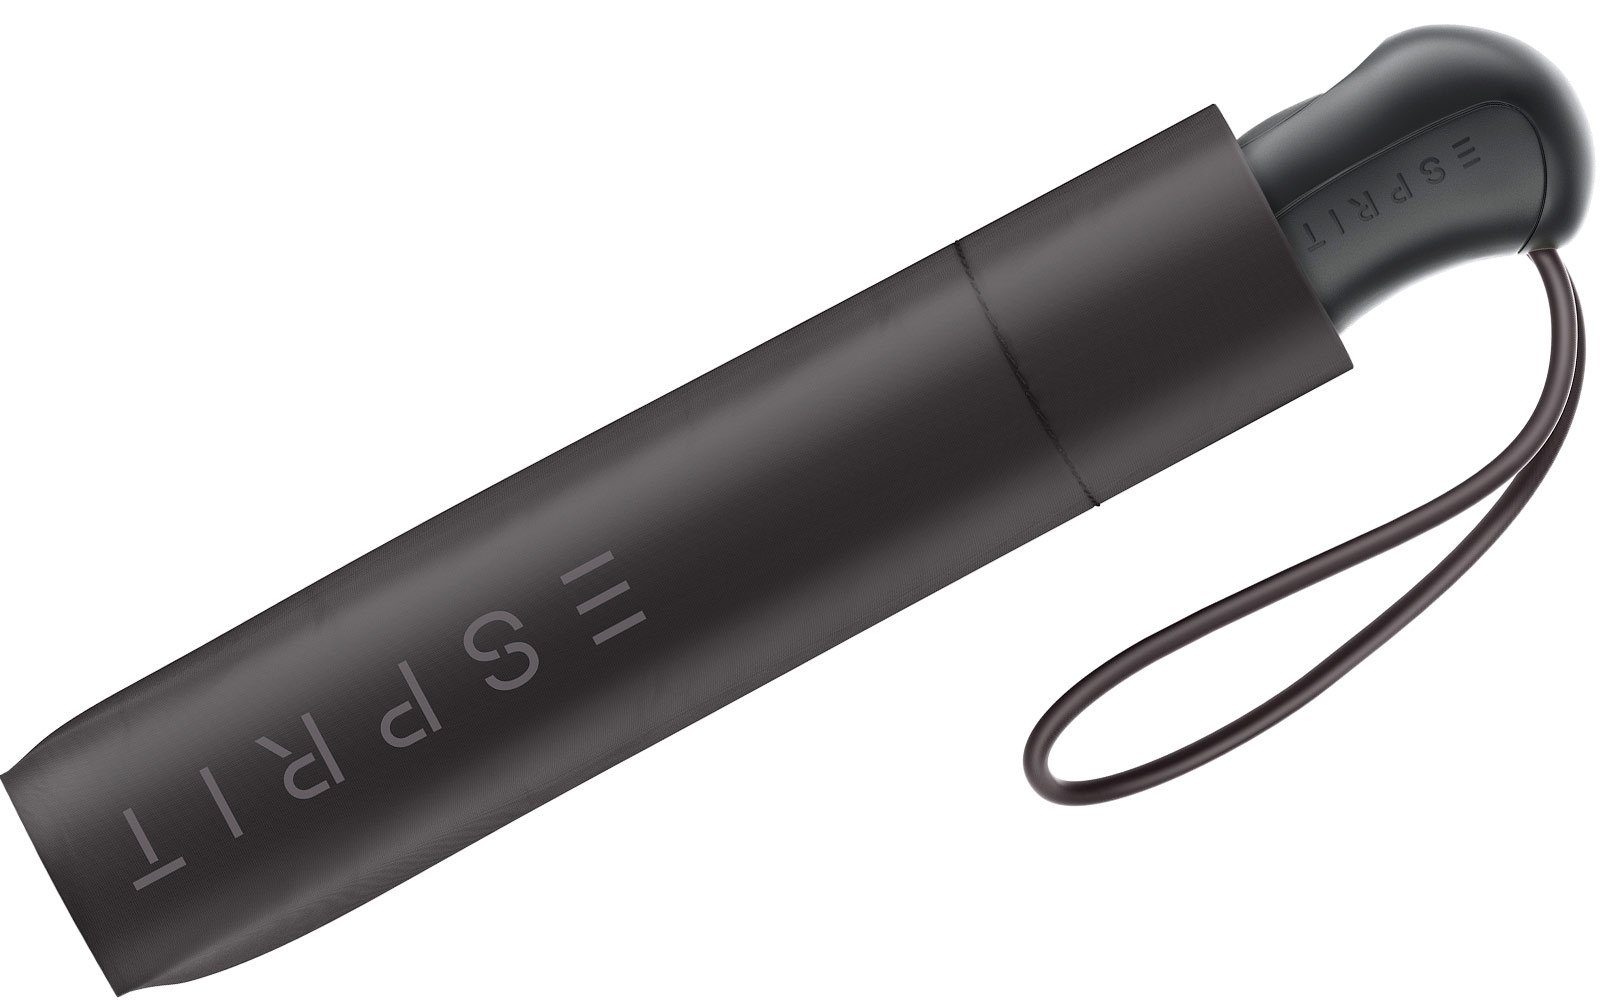 Easymatic schwarz Automatik, Auf-Zu Esprit Schirm Light mit stabil Taschenregenschirm und praktisch